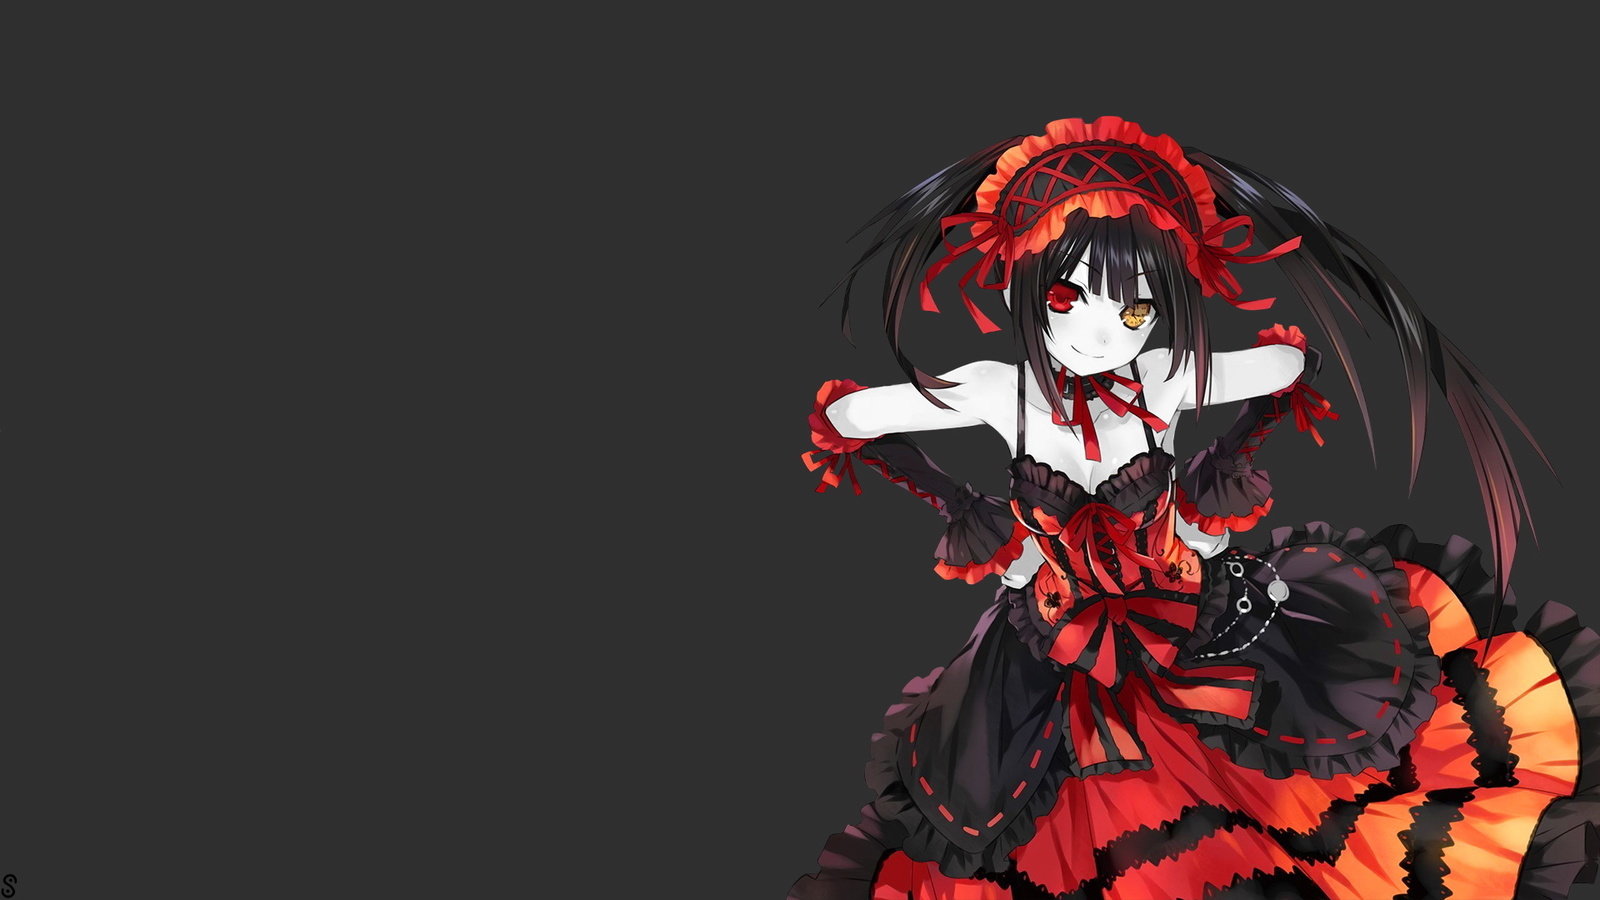 kurumi fond d'écran hd,rouge,anime,oeuvre de cg,cheveux noirs,illustration